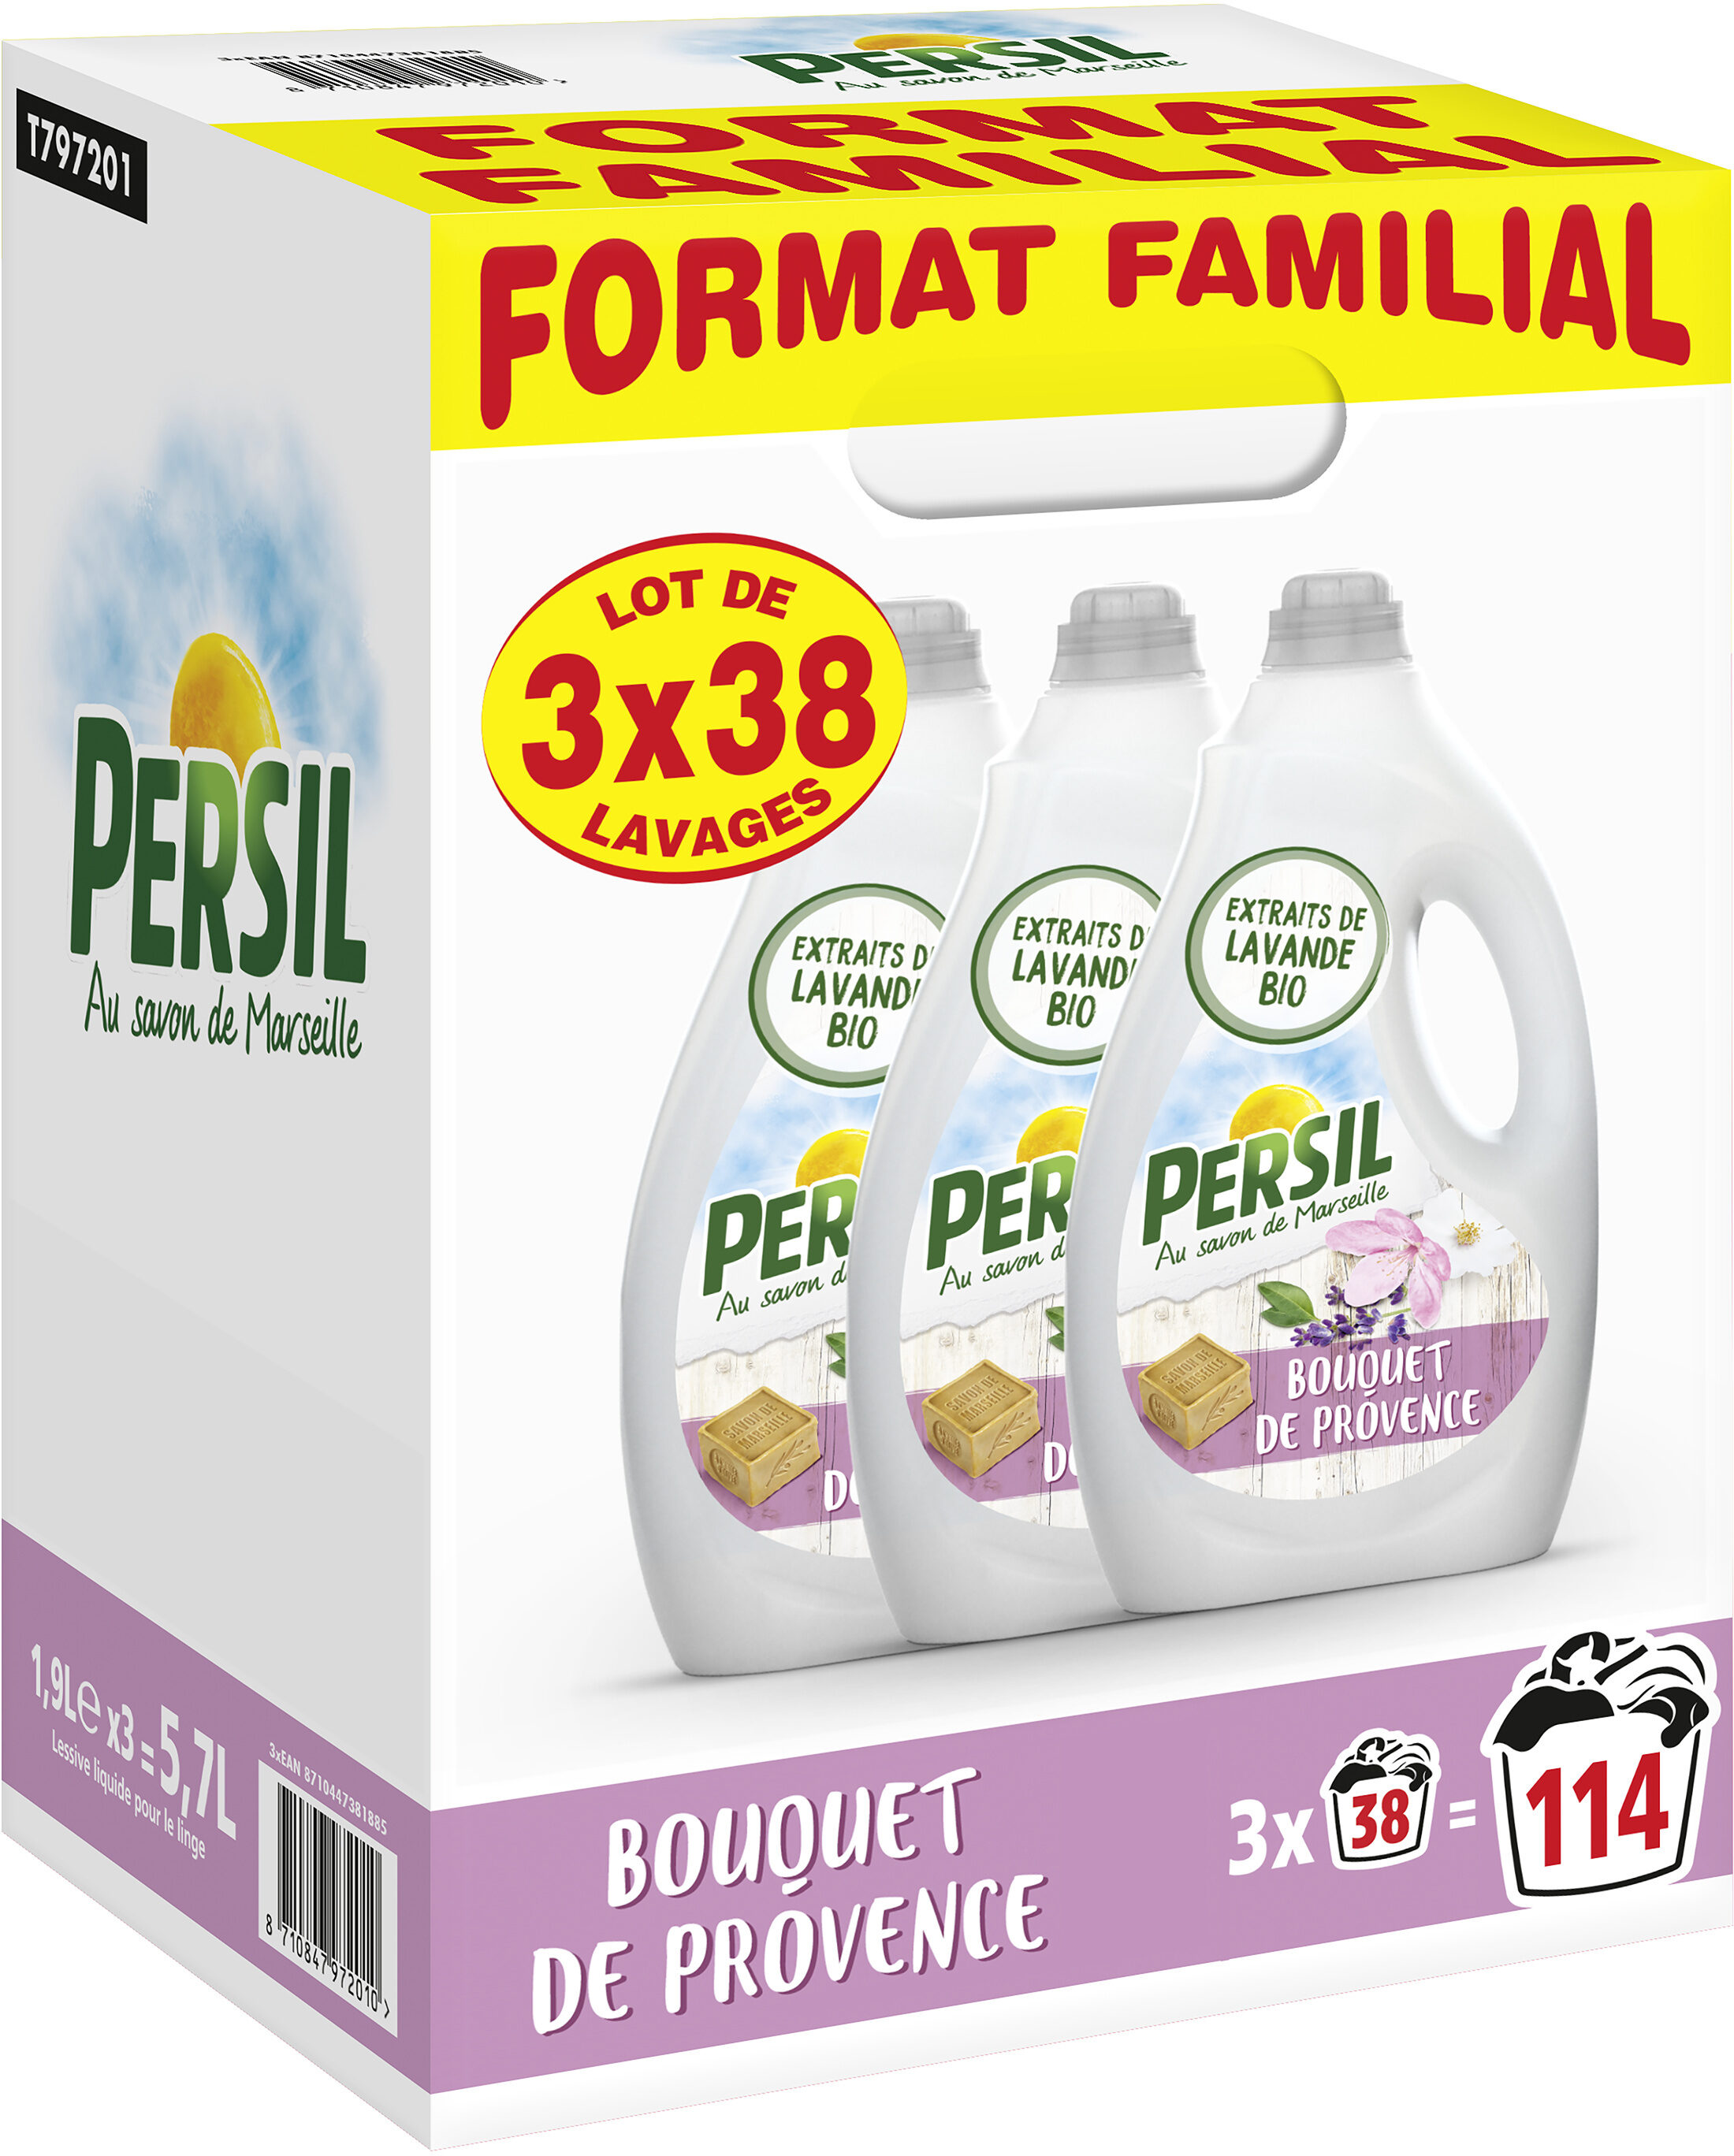 Persil Lessive Liquide Bouquet de Provence aux extraits de Lavande - Format Familial Lot 3x1.9L - 114 Lavages - Product - fr